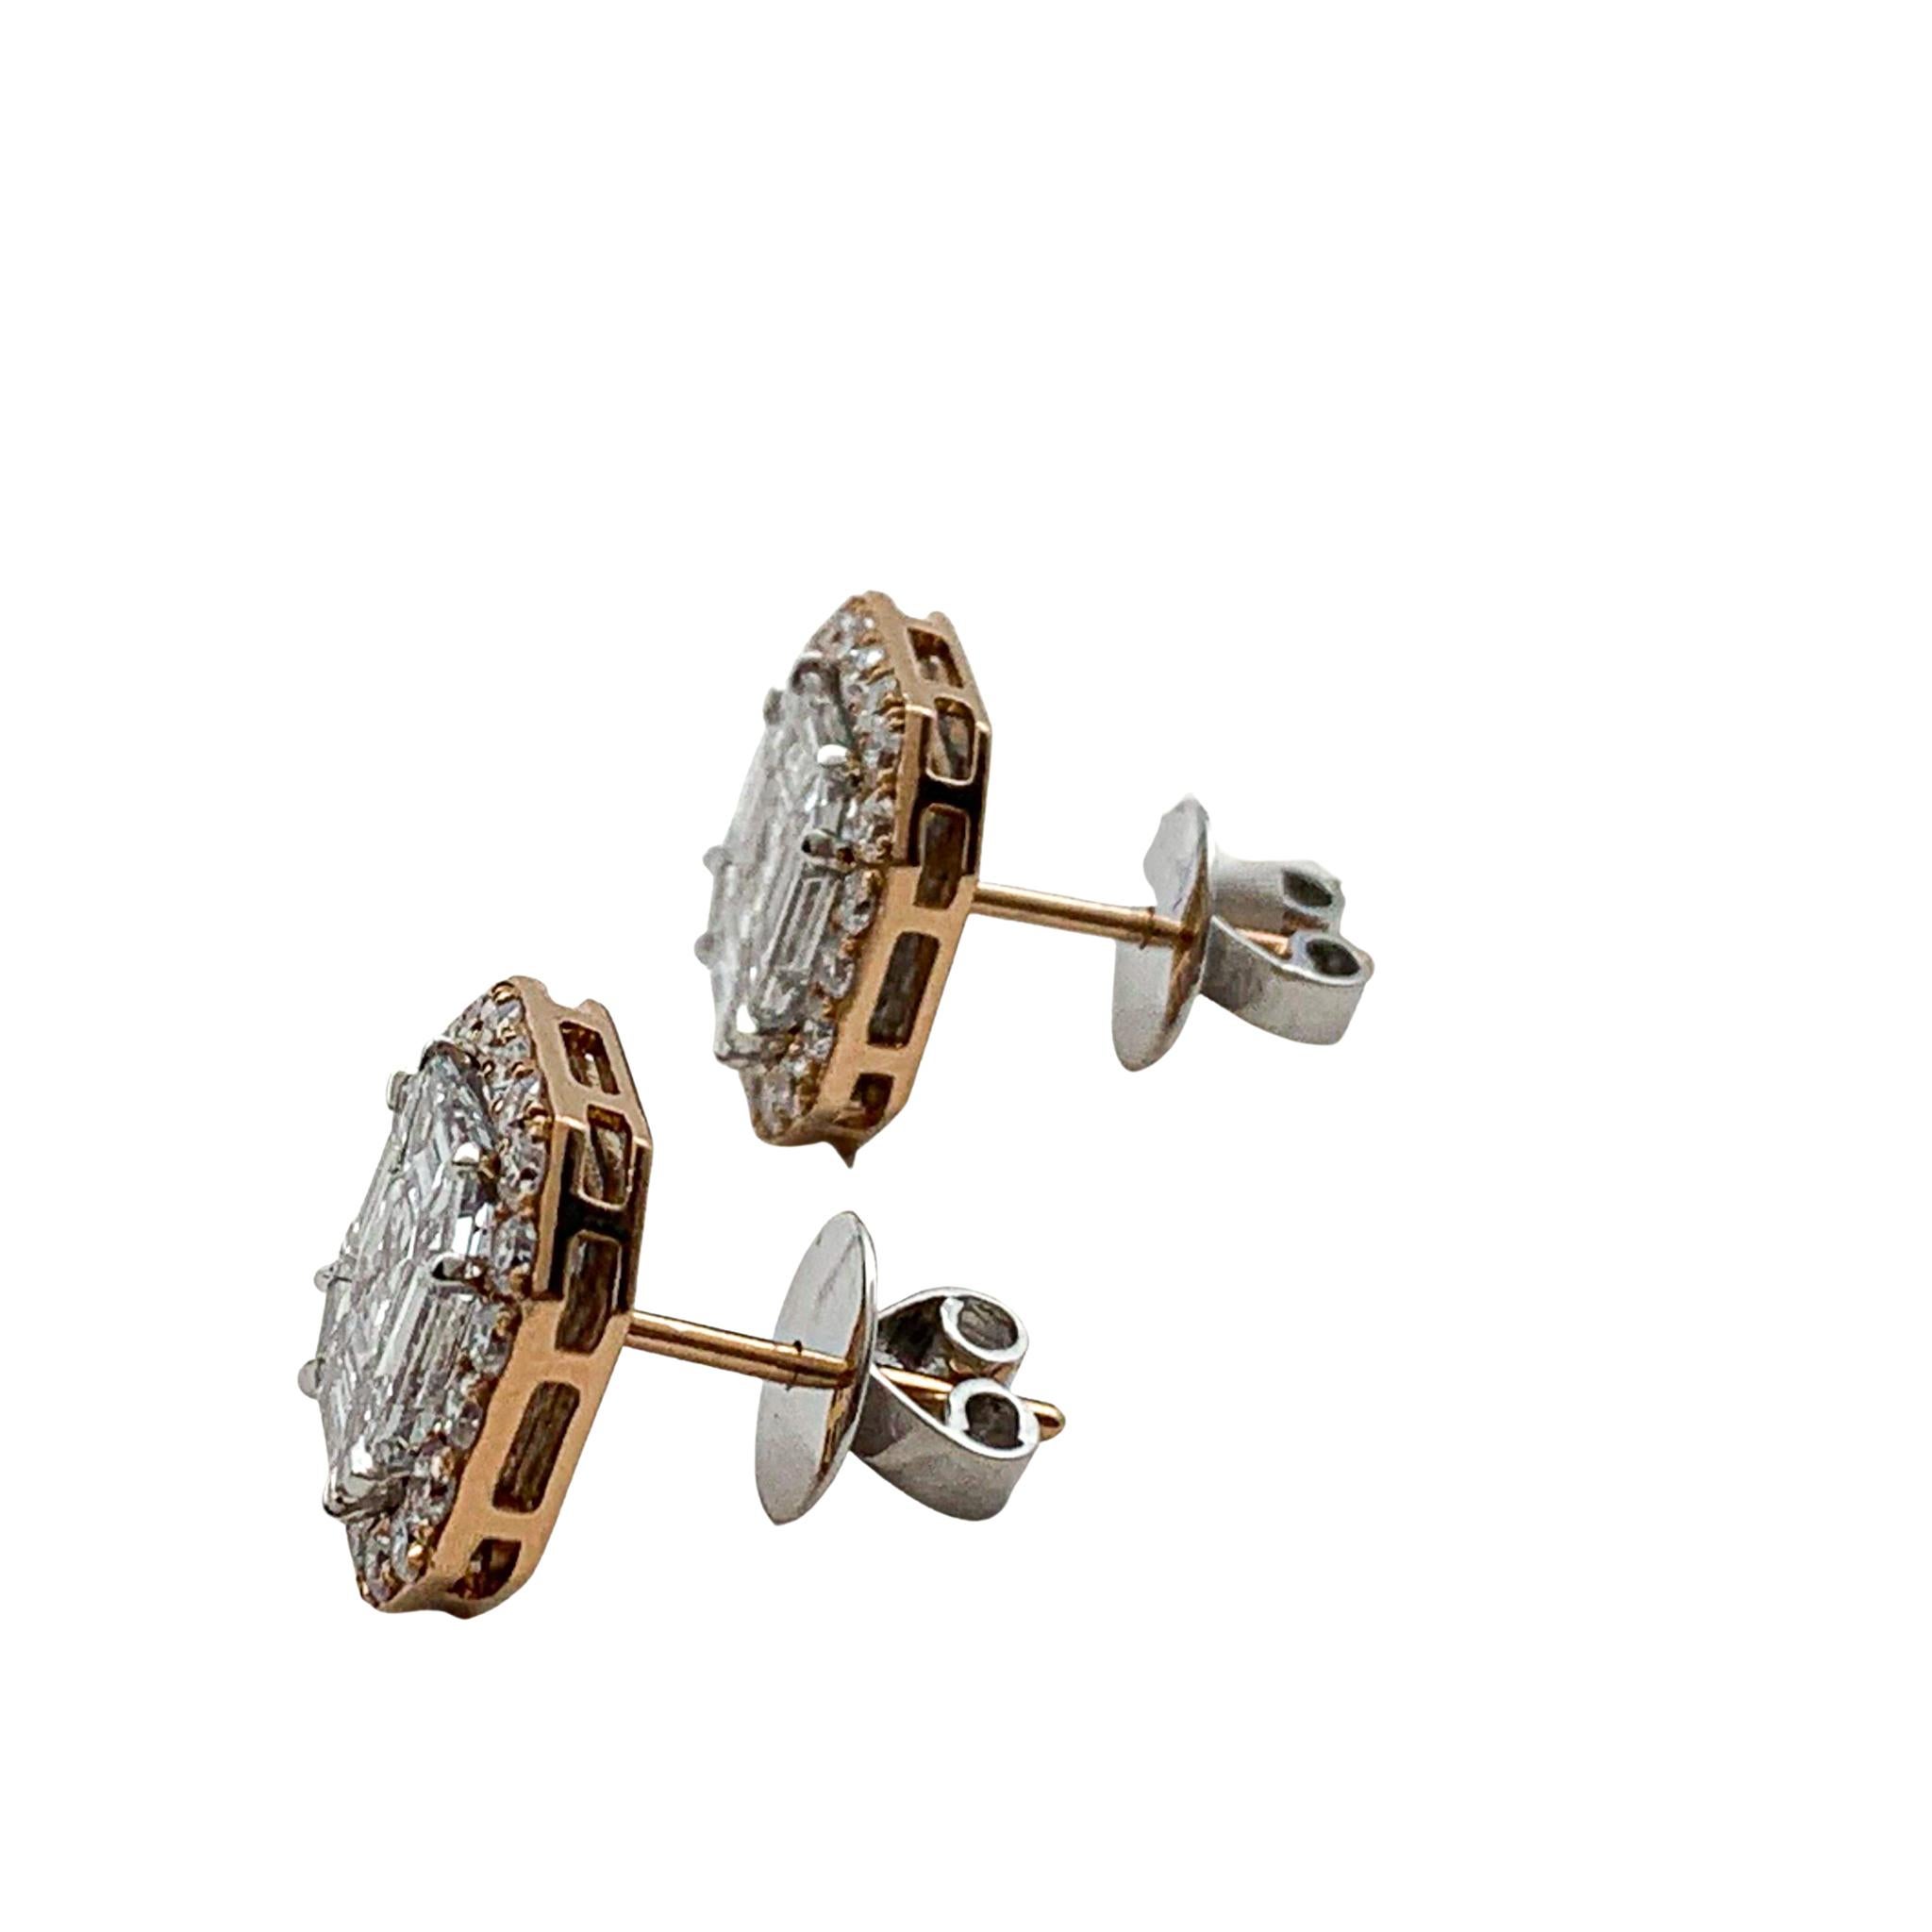 Mixed Cut Diamond Earrings 4.60 Carat 18 Karat Gold E/VS